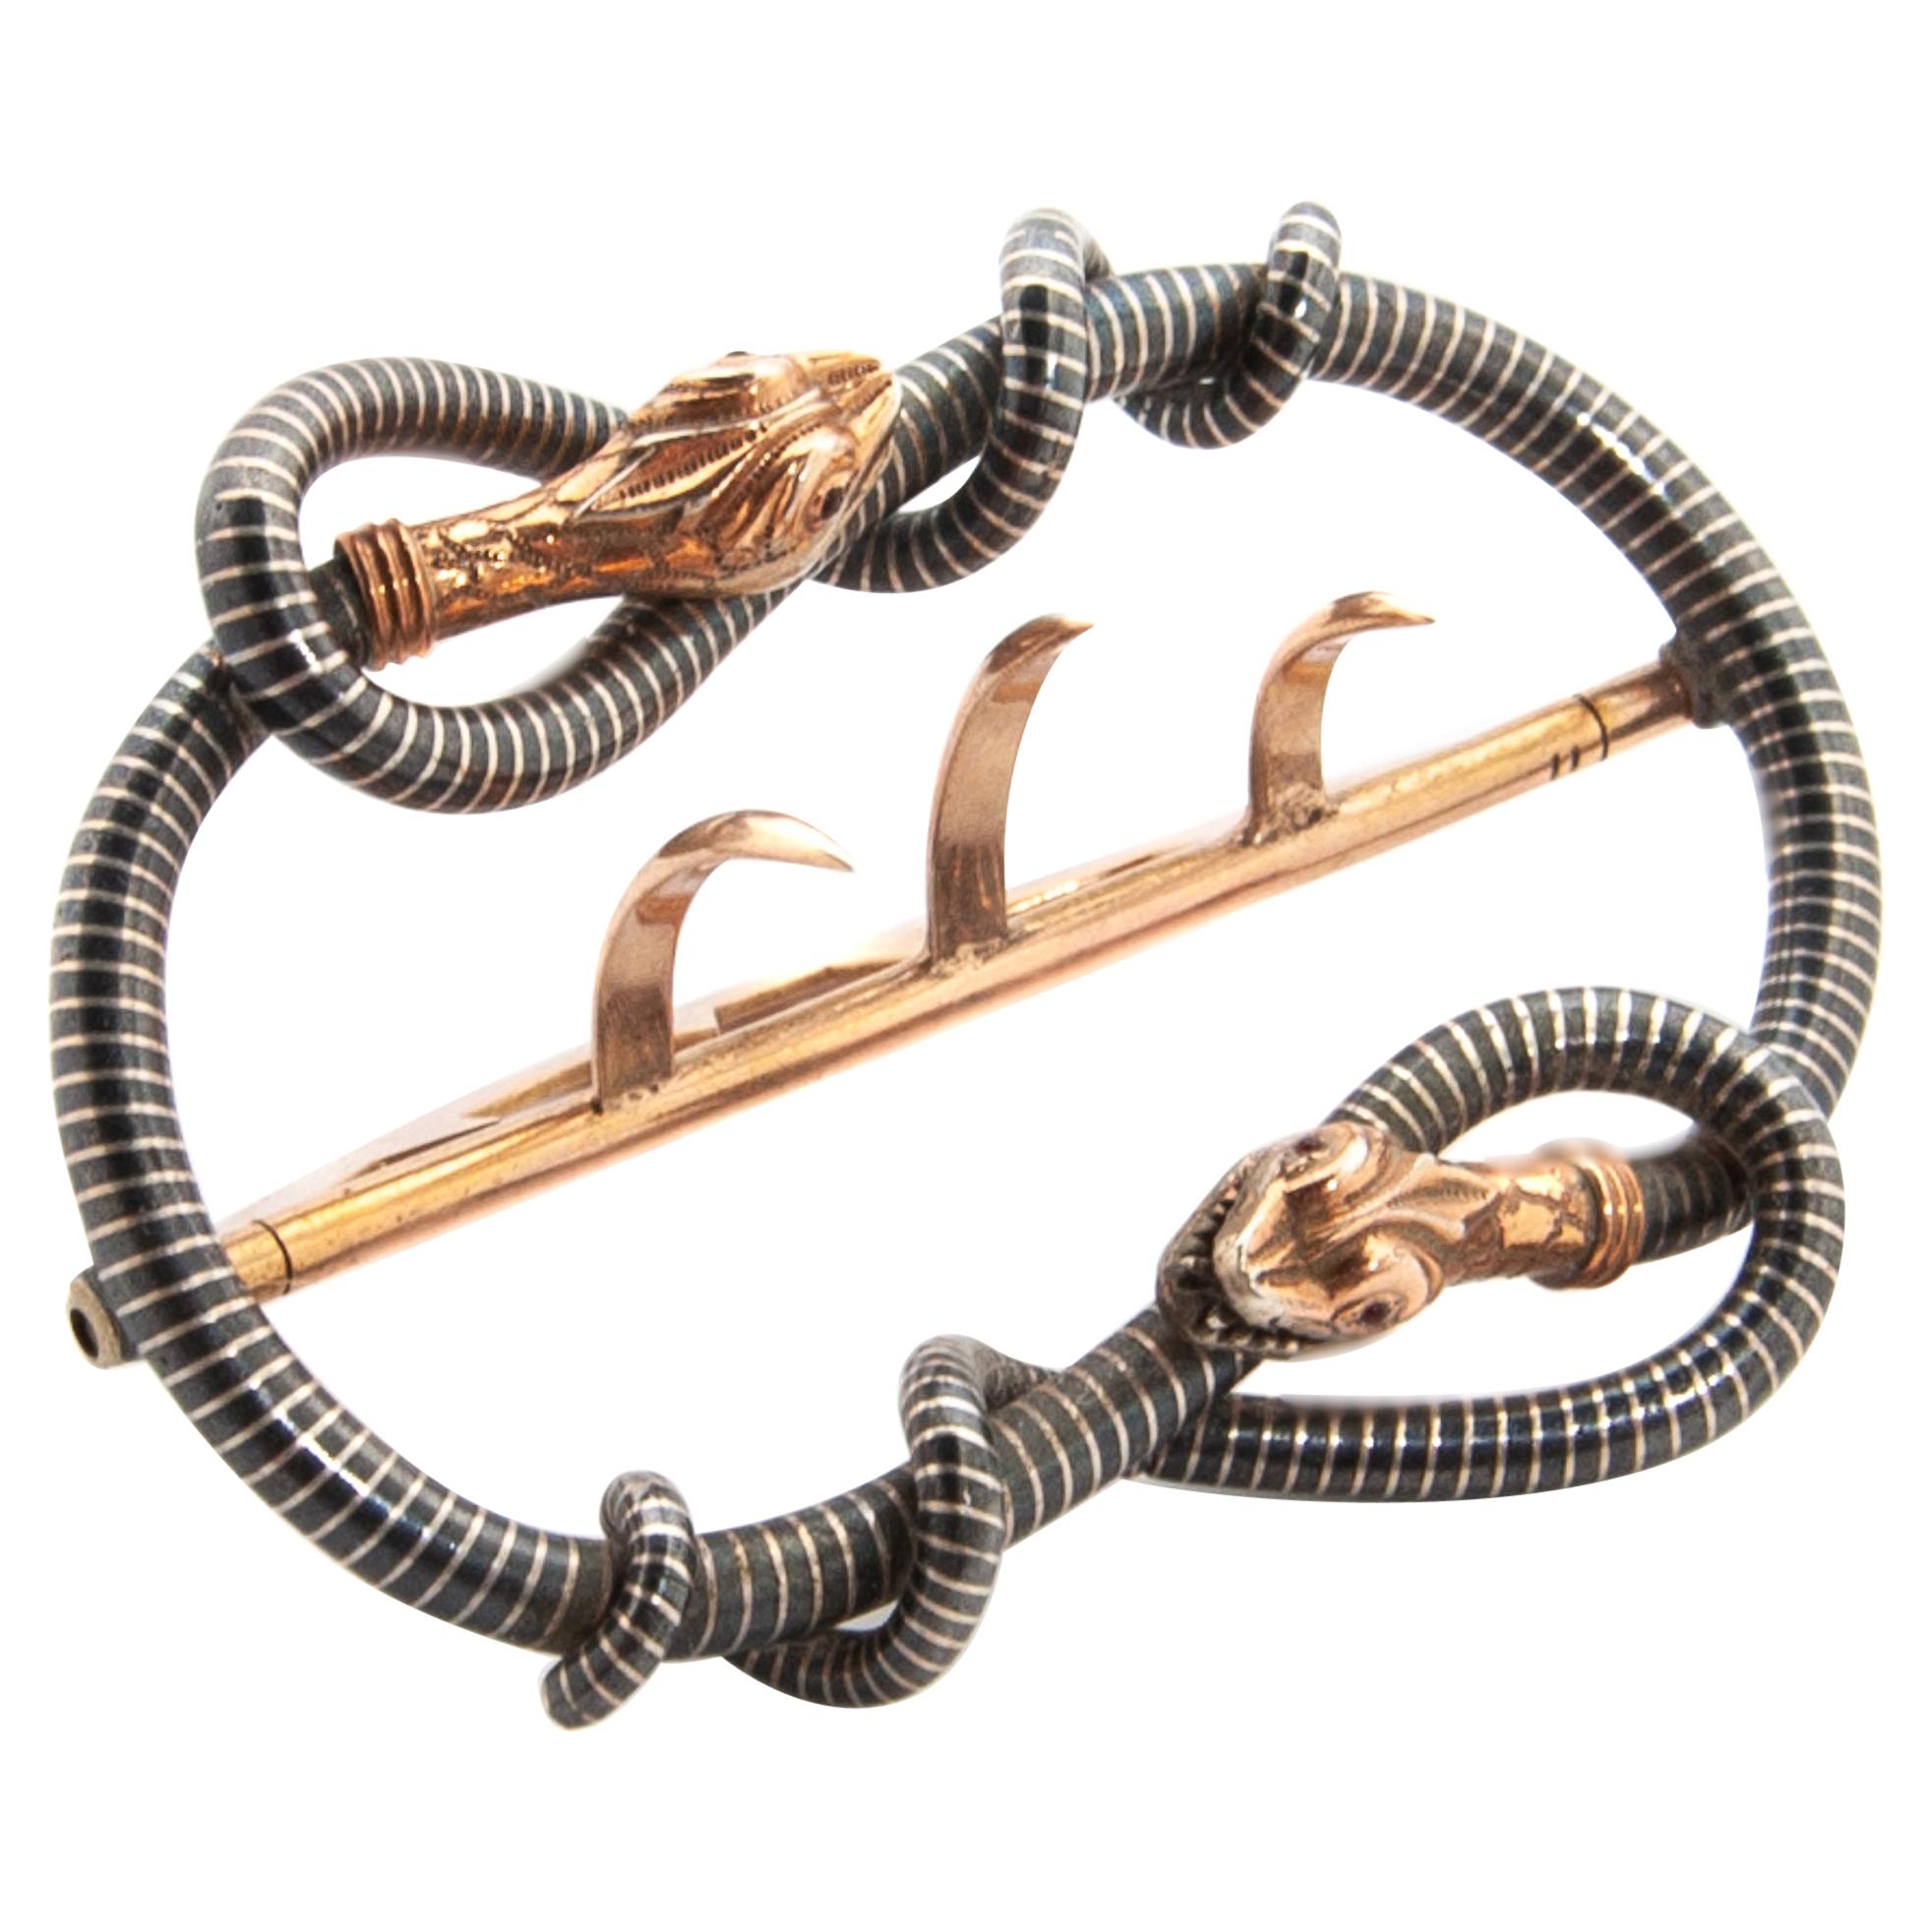 Art Nouveau Jugendstil Serpent Silver Belt Buckle